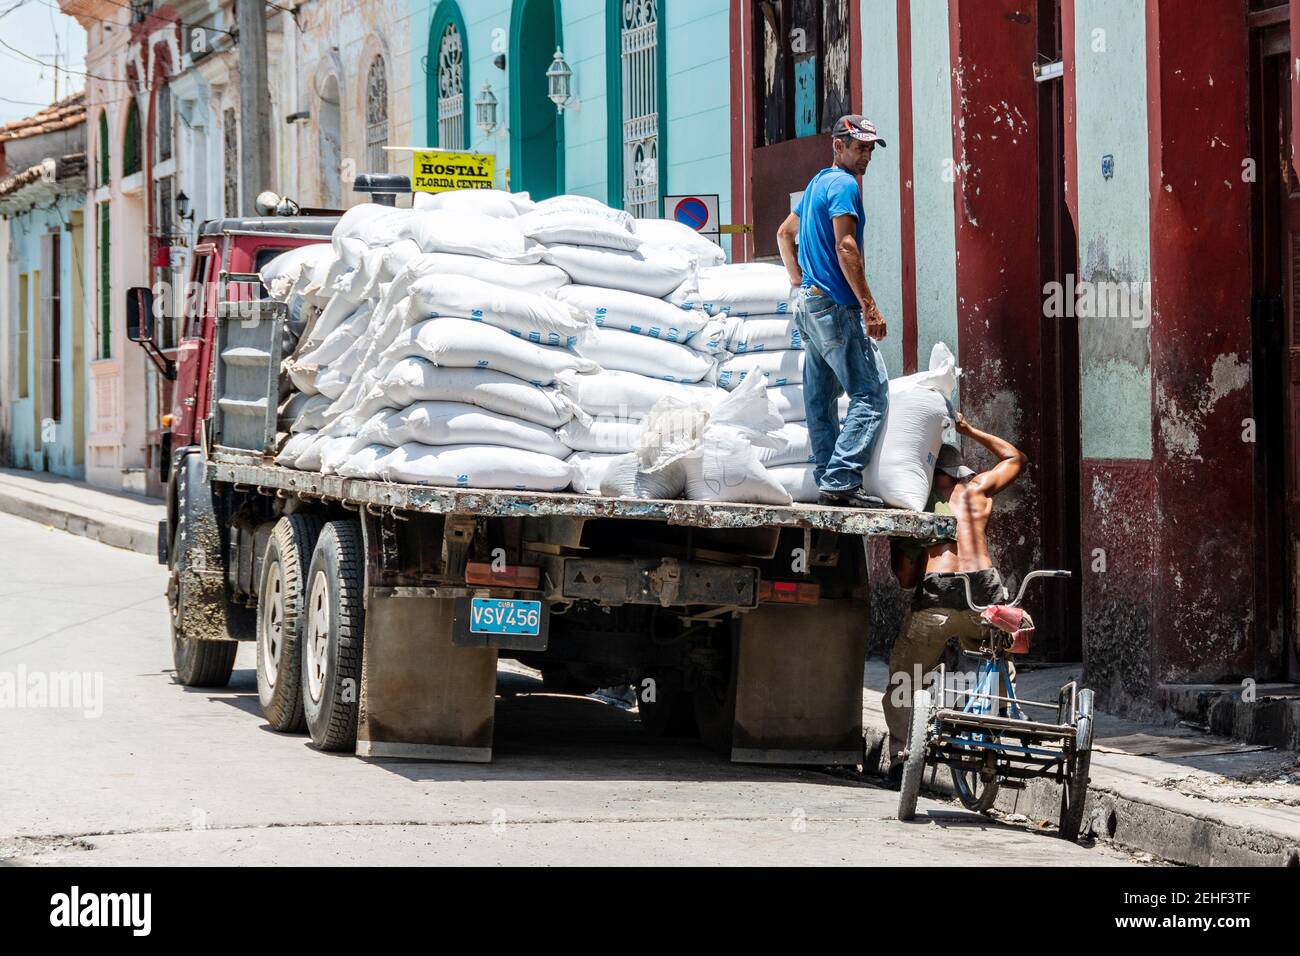 Camion déchargement de la nourriture en entreposage, Santa Clara, Cuba 2014 Banque D'Images